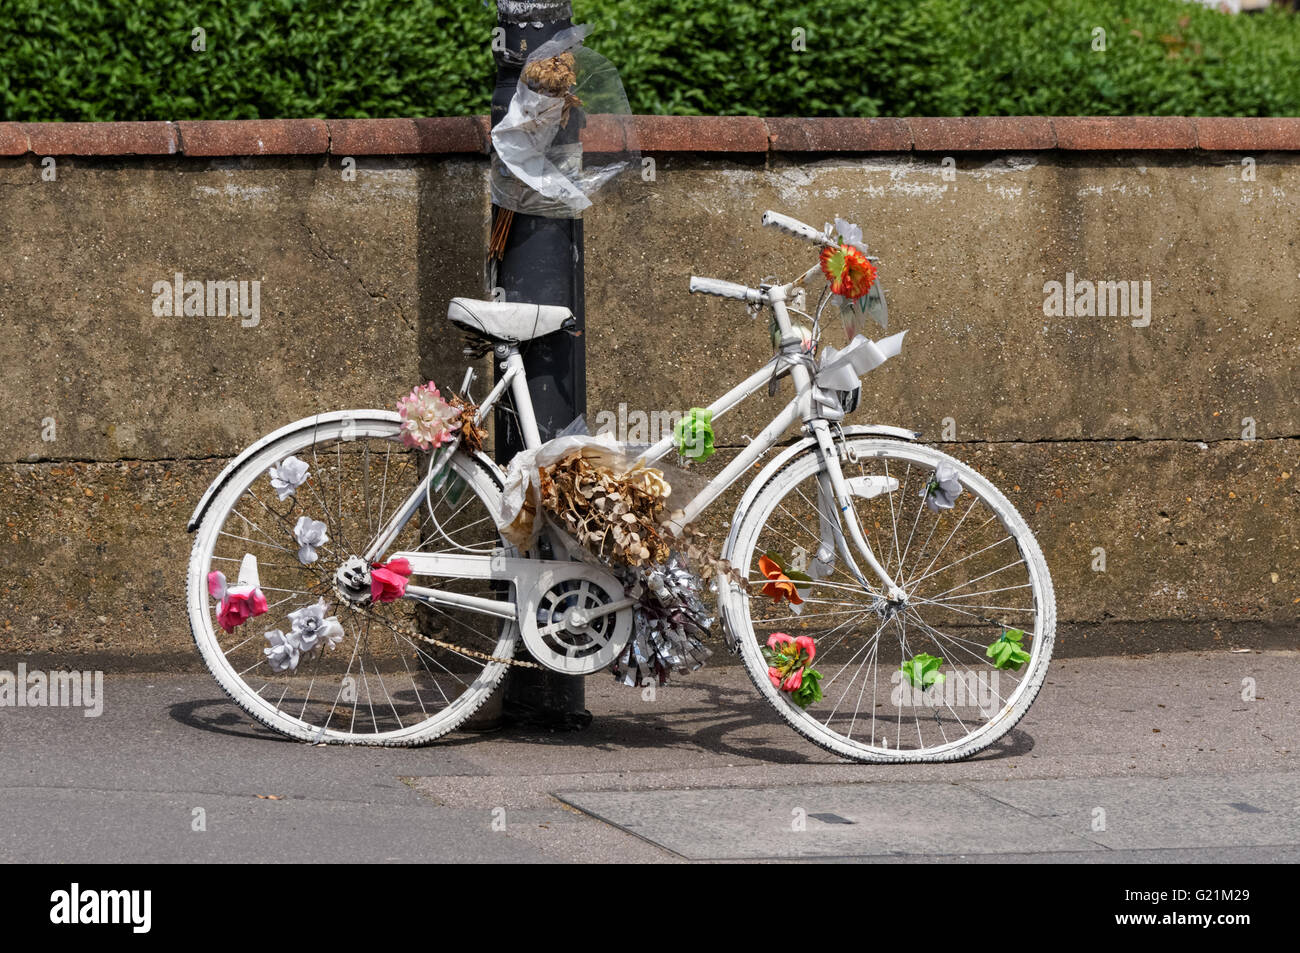 Peint blanc vélo ghost mémorial à tué un cycliste, Londres Angleterre Royaume-Uni UK Banque D'Images